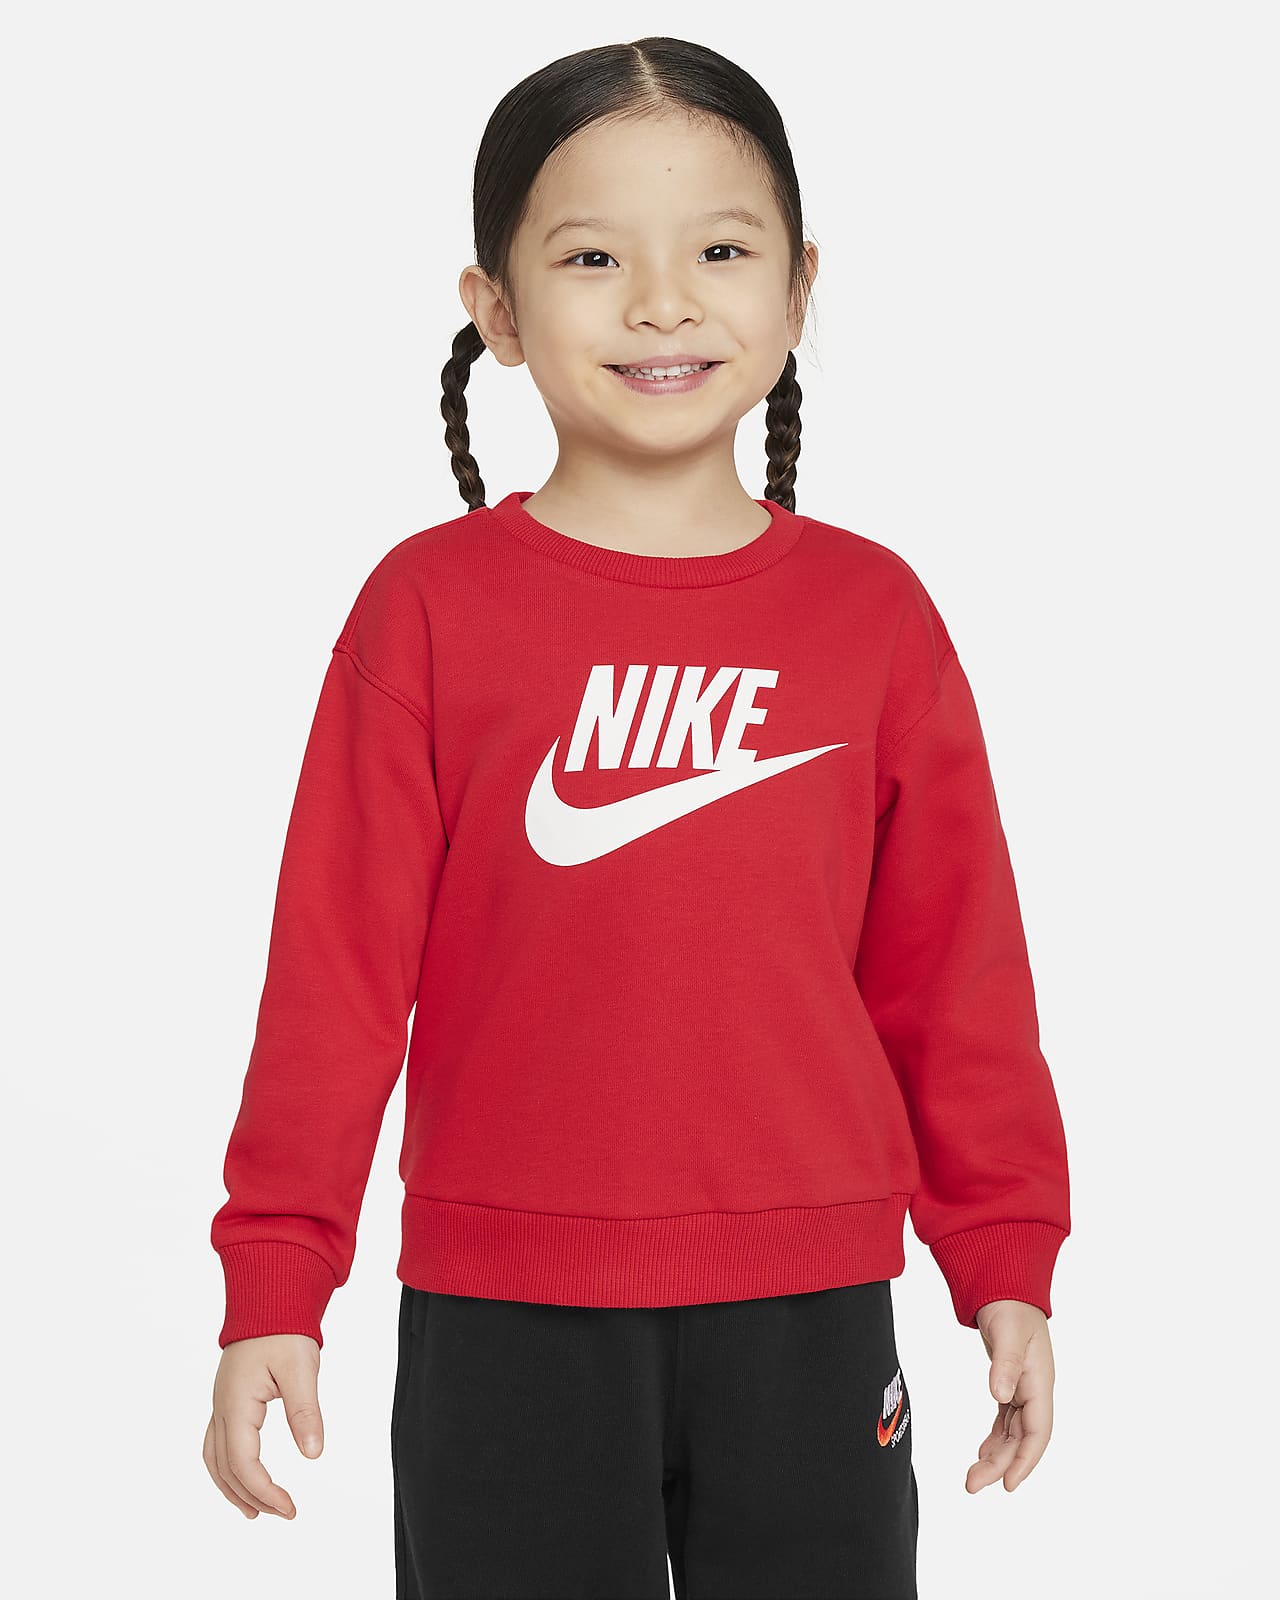 Nike 婴童法式毛圈圆领上衣